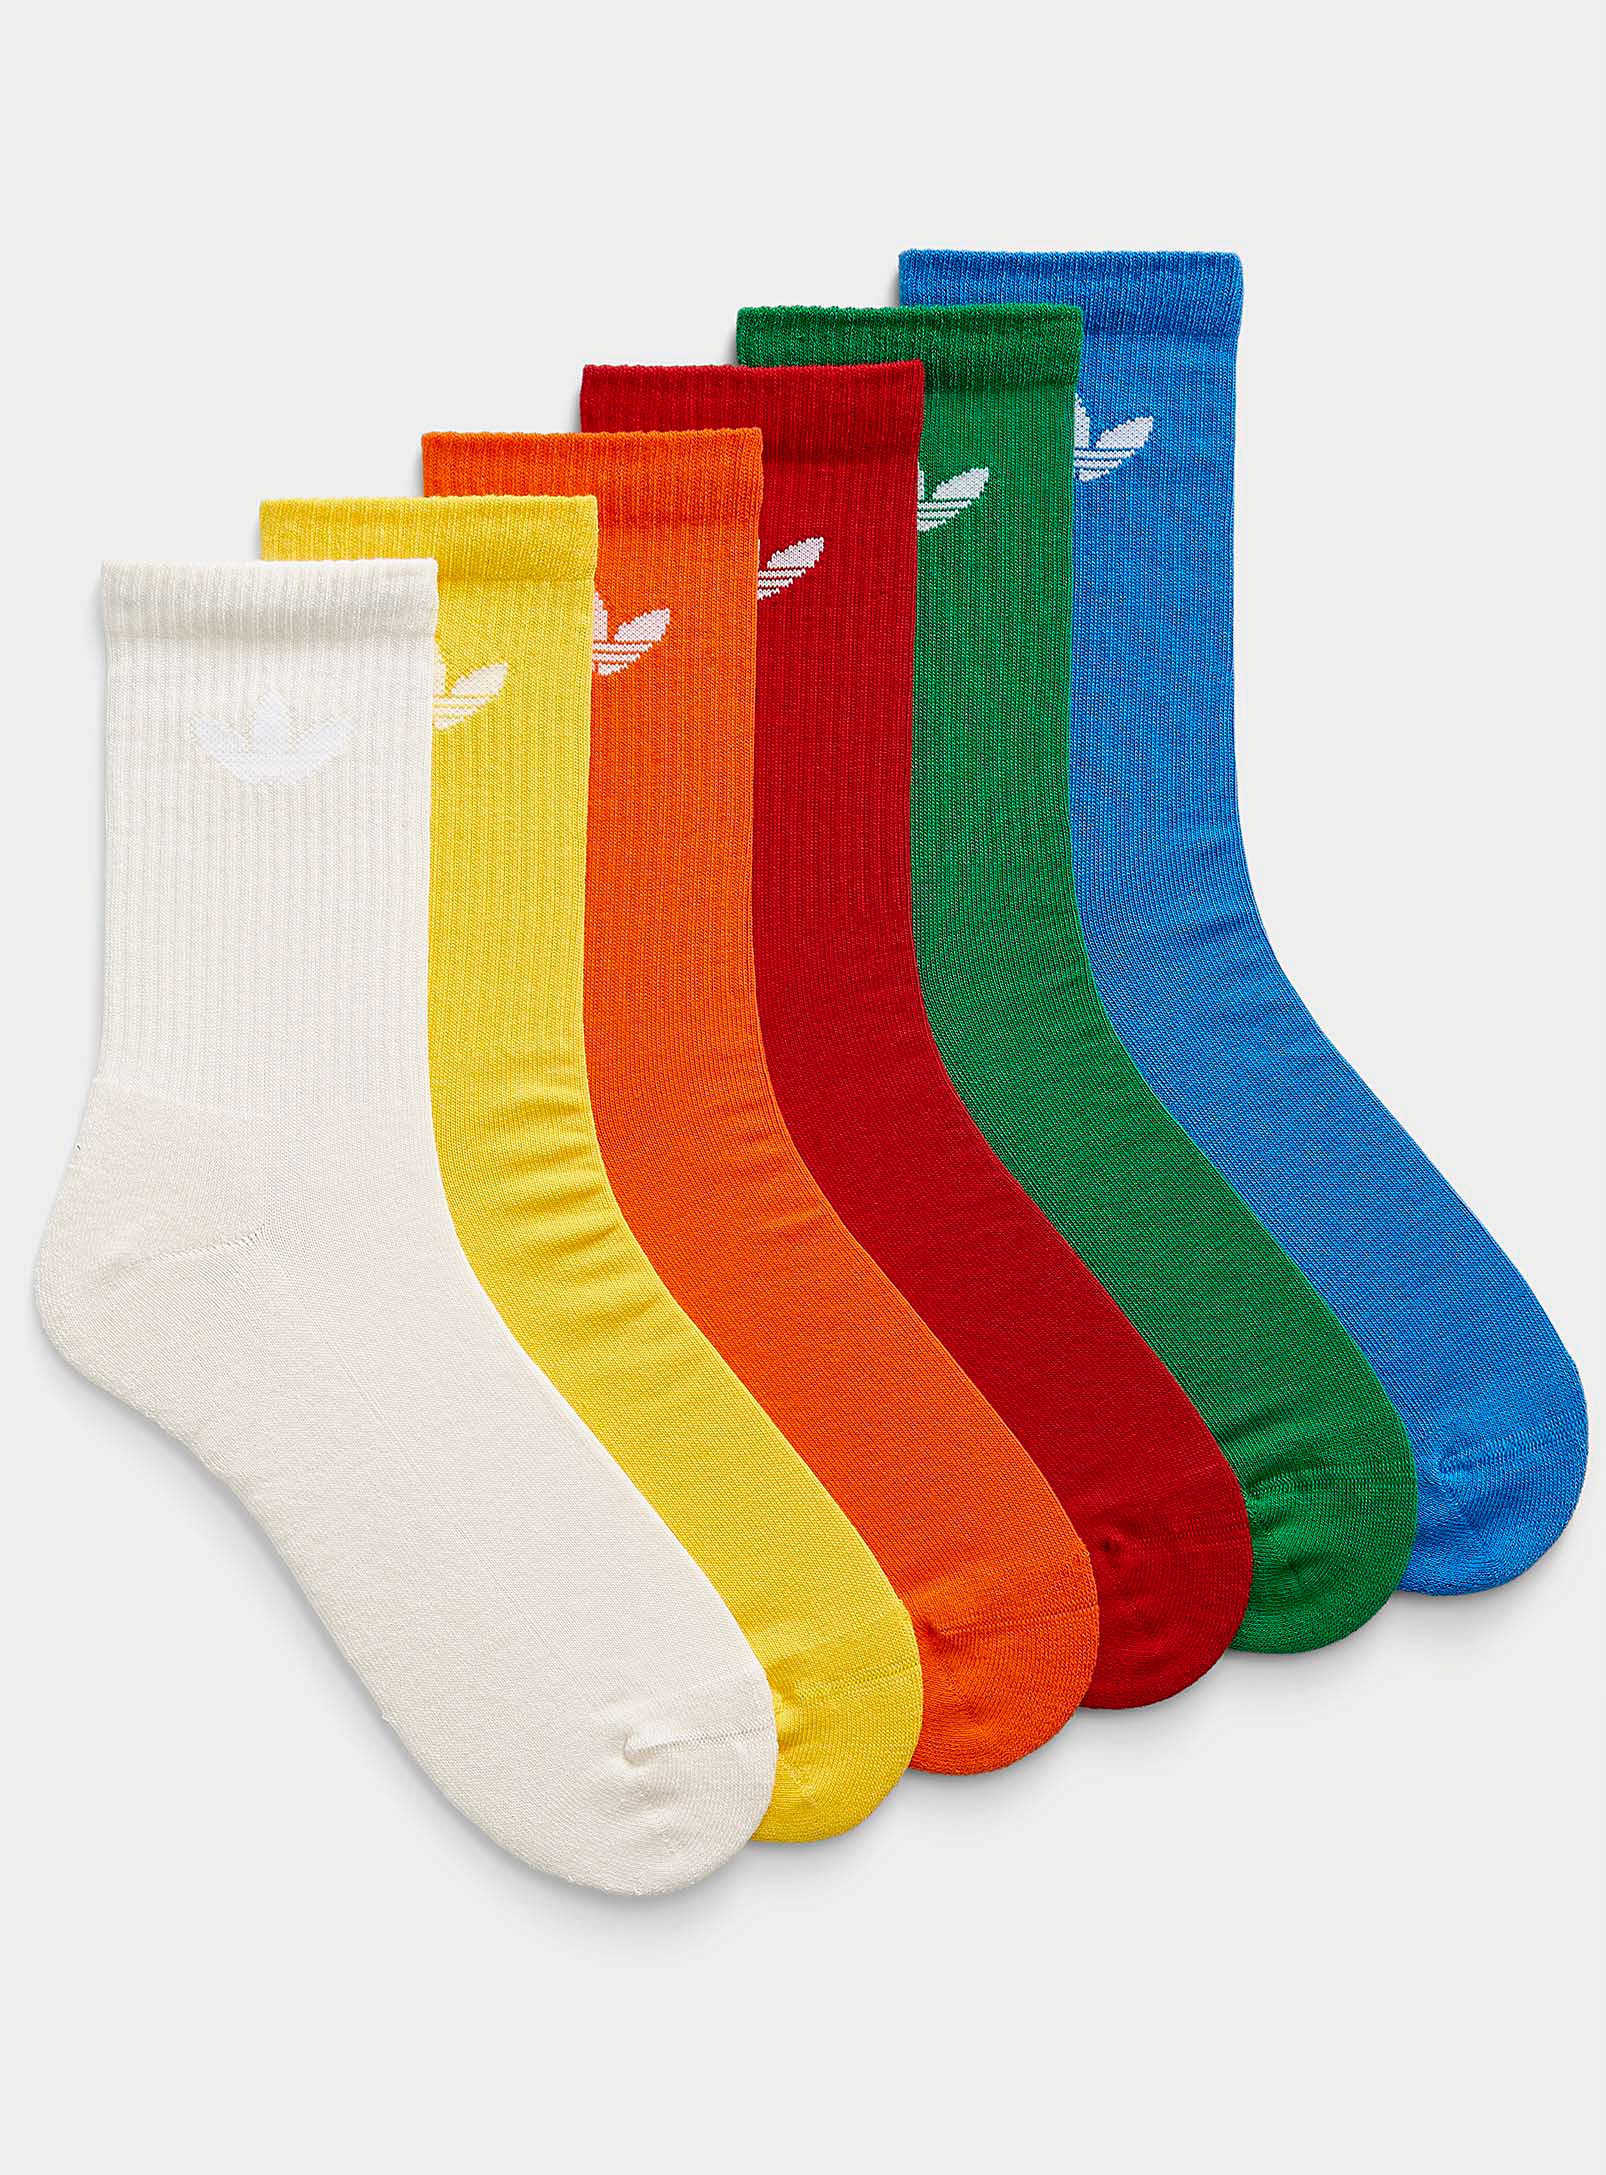 Adidas Originals - Les chaussettes athlétiques colorées Emballage de 6